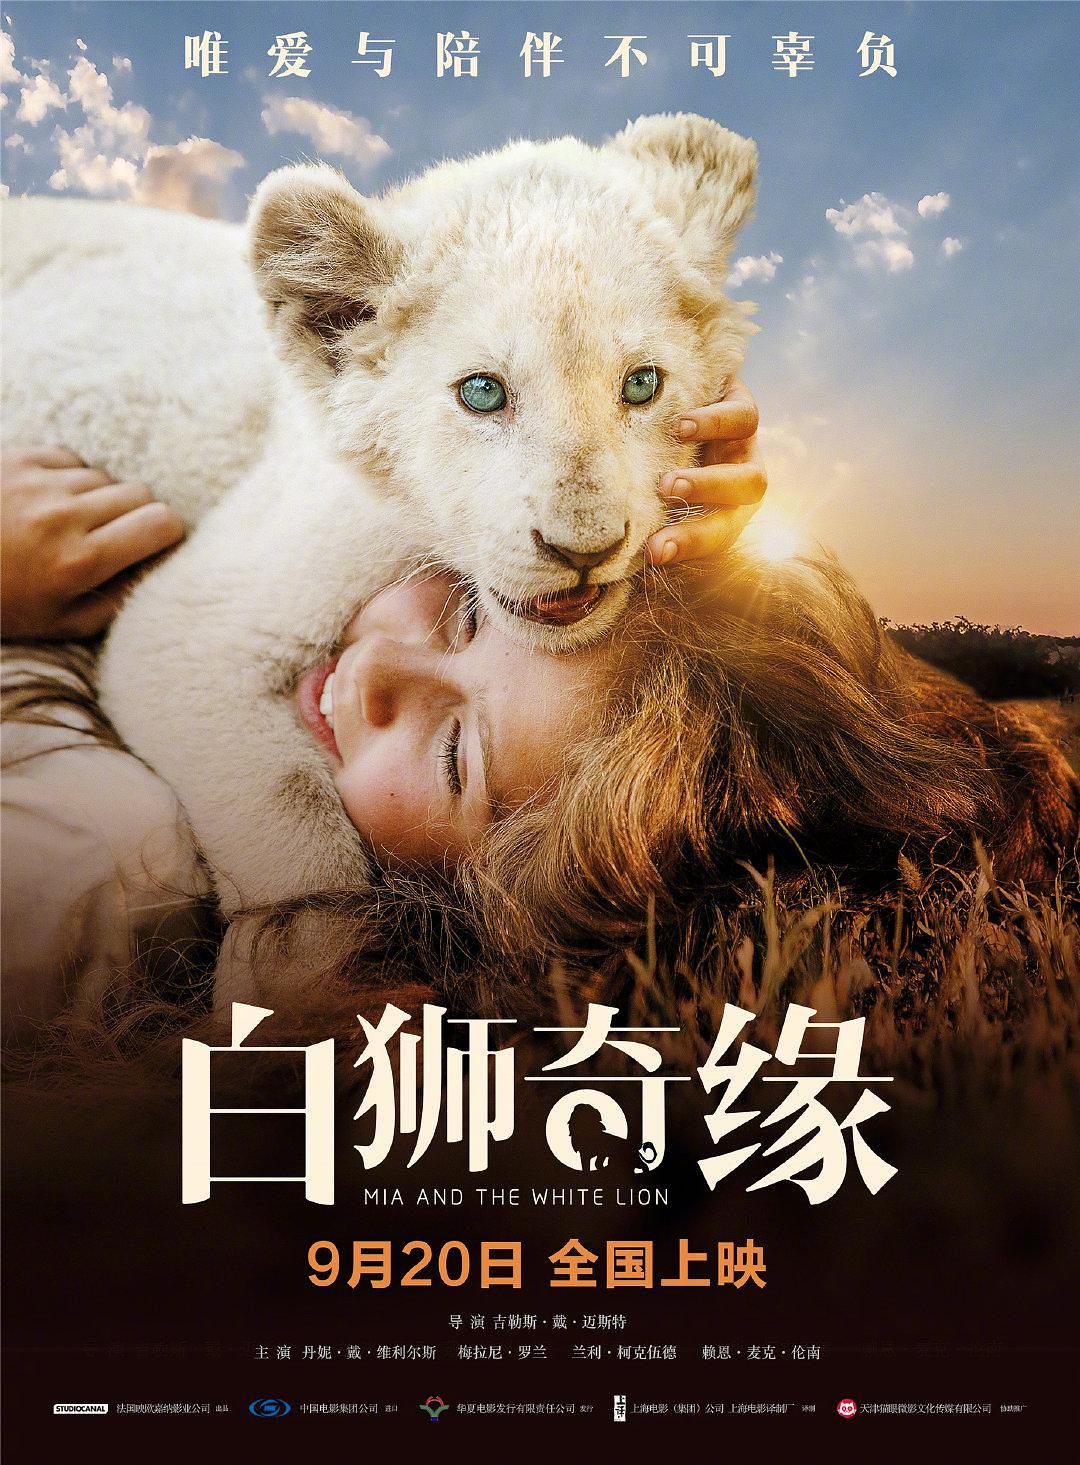 白狮奇缘 Mia.and.the.White.Lion.2018.DUBBED.1080p.BluRay.x264-PussyFoot 8.74GB-1.png